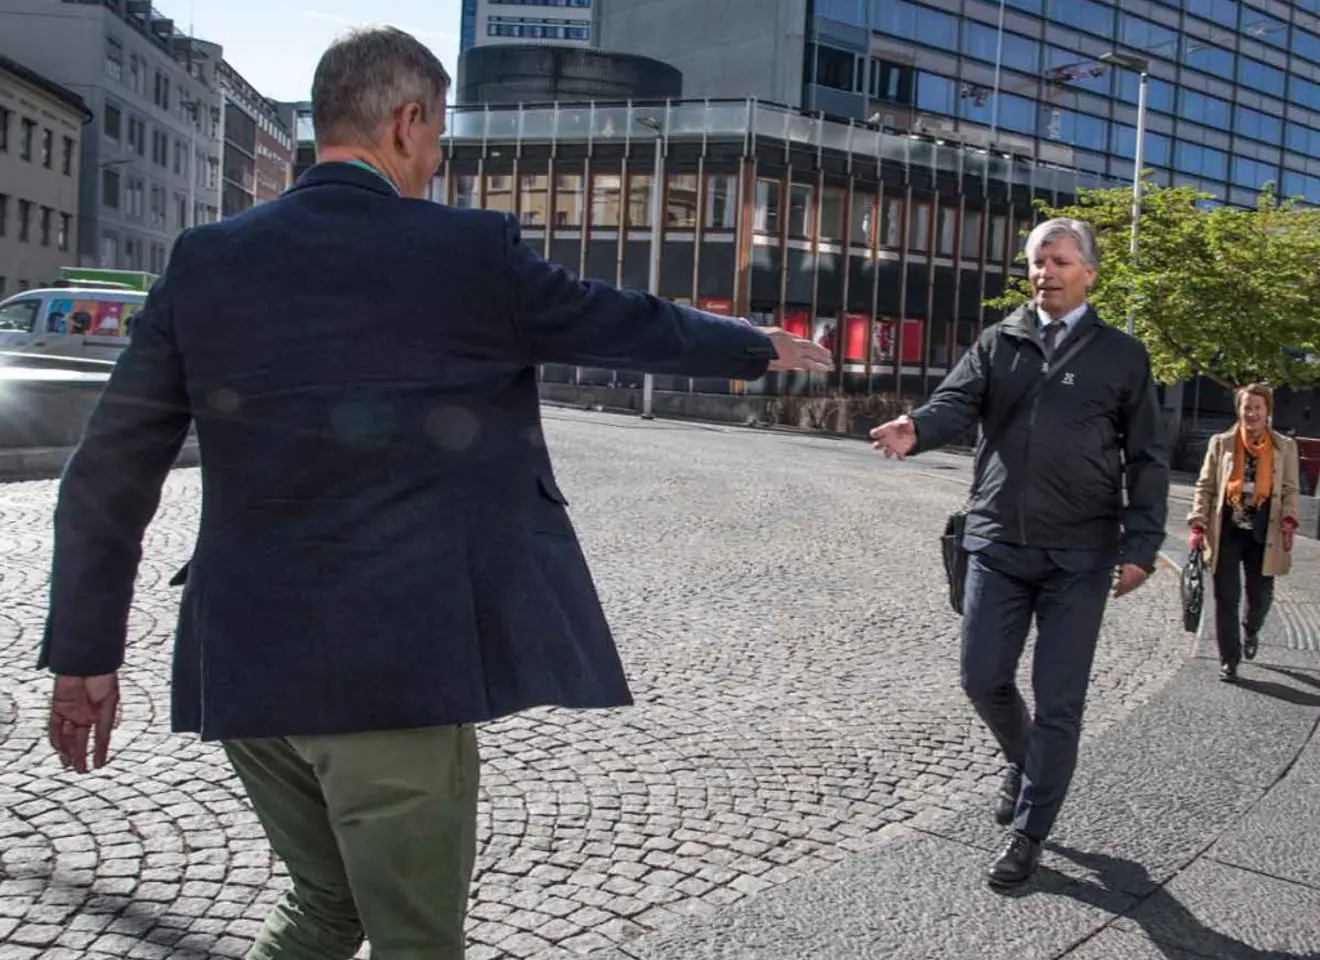 Ola Elvestuen og Tom Baade-Mathiesen hilser på hverandre på gaten utenfor Edderkoppen Teater i Oslo